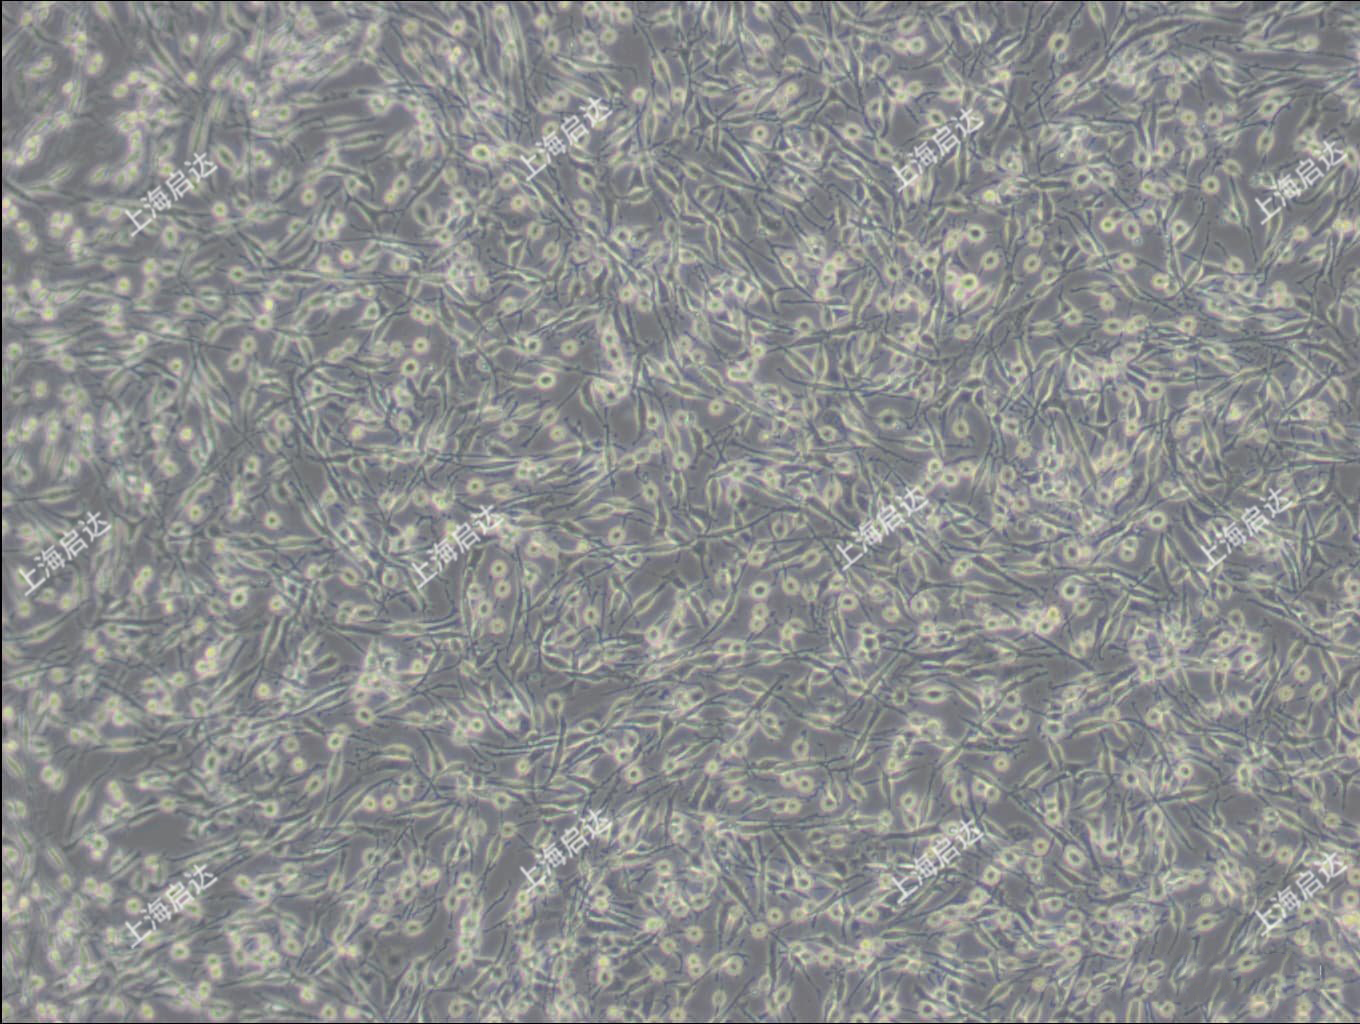 PC-12(高分化)大鼠肾上腺嗜铬细胞瘤细胞(高分化)